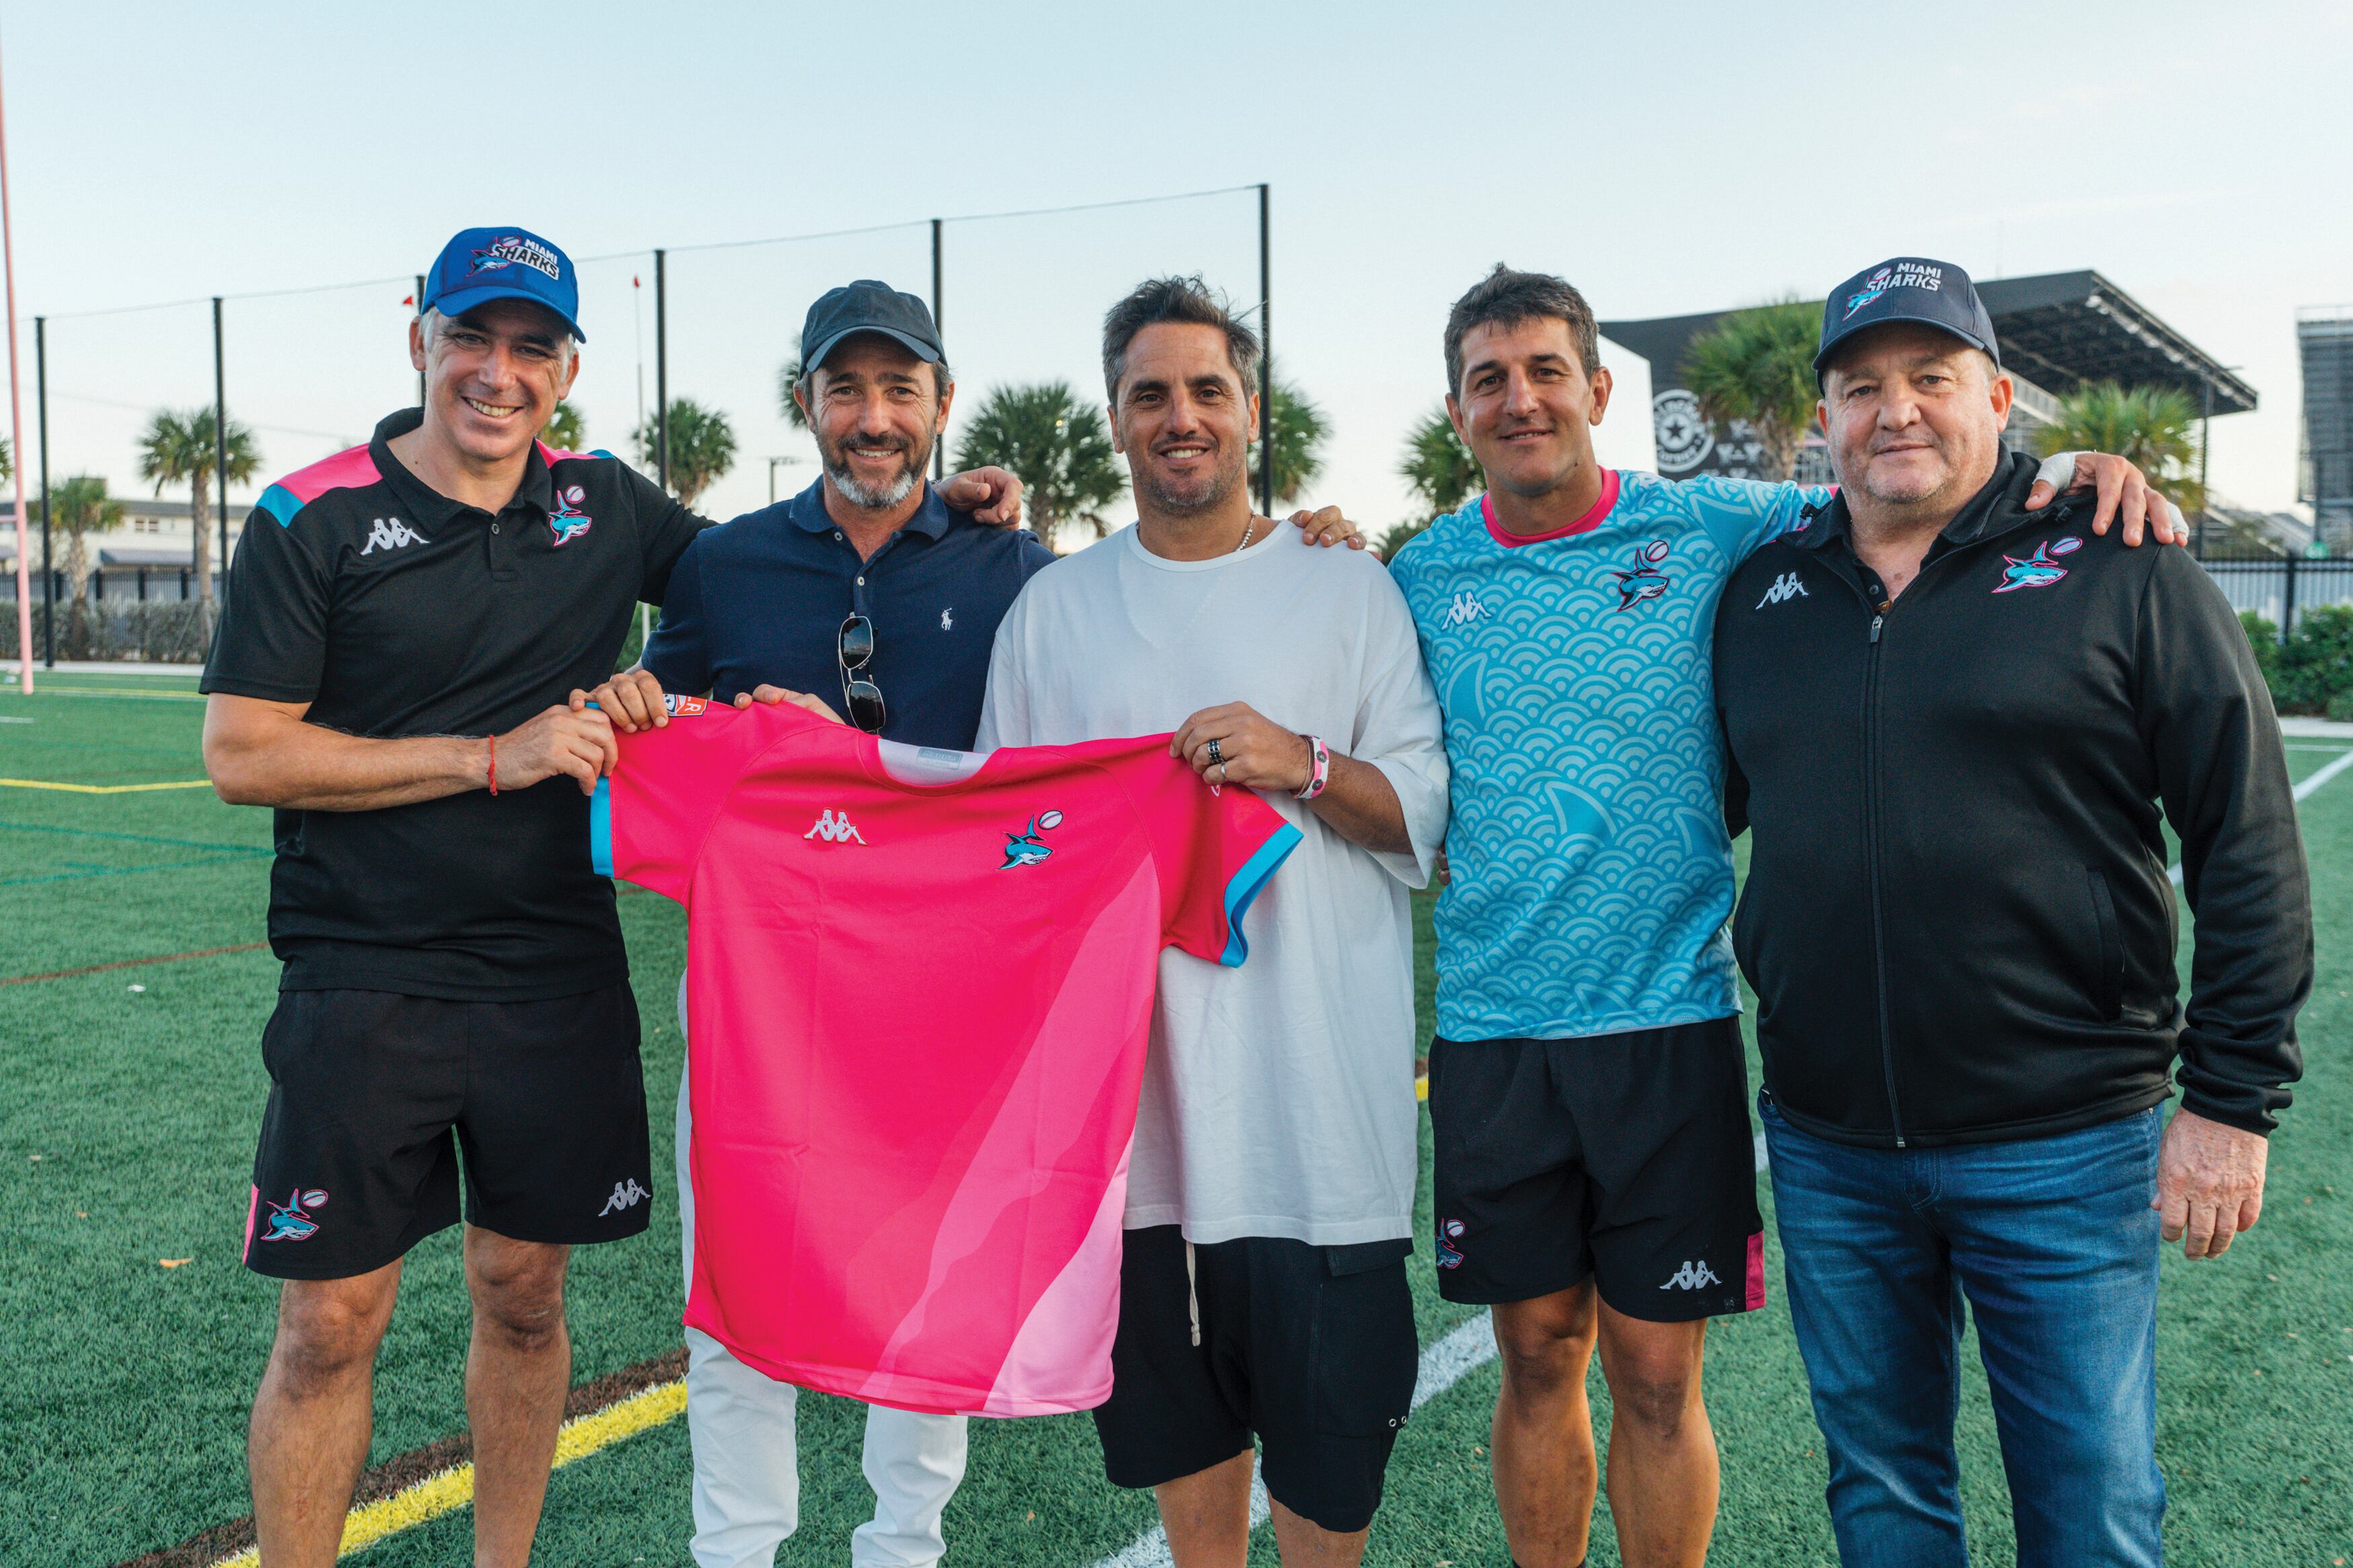 El coach José Pellicera, Marcos Galperín, el ex Puma Agustín Pichot, Cubelli y Alejandro Macfarlane. El team jugó su primer partido este año y en marzo goleó por 50-21 al Anthem RC.